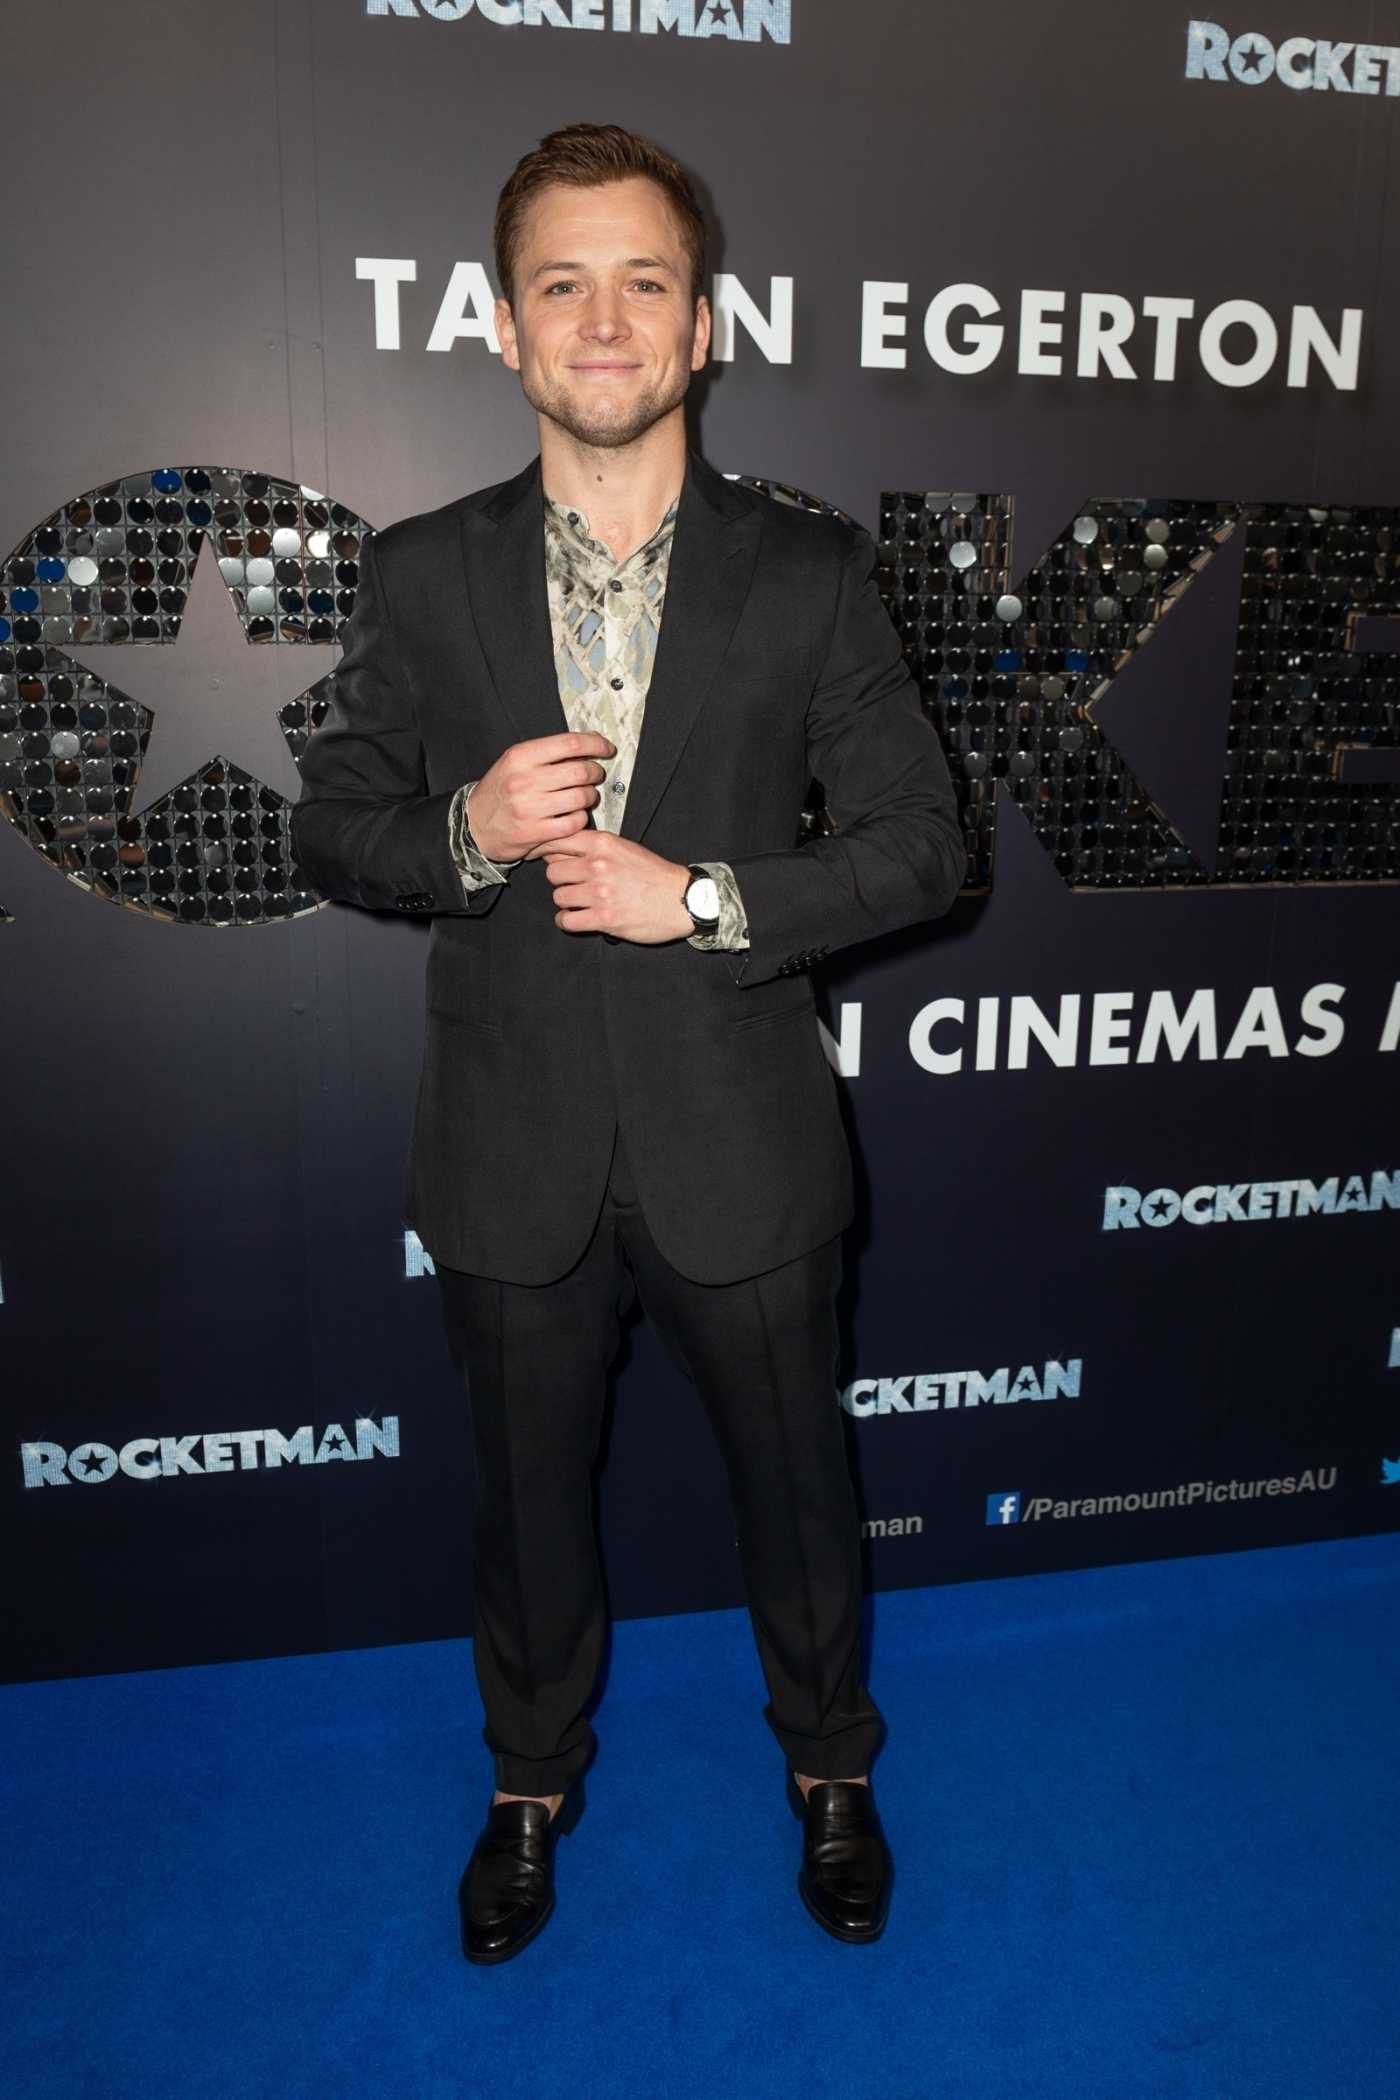 Taron Egerton Attends the Rocketman Australian Premiere in Sydney 05/25/2019